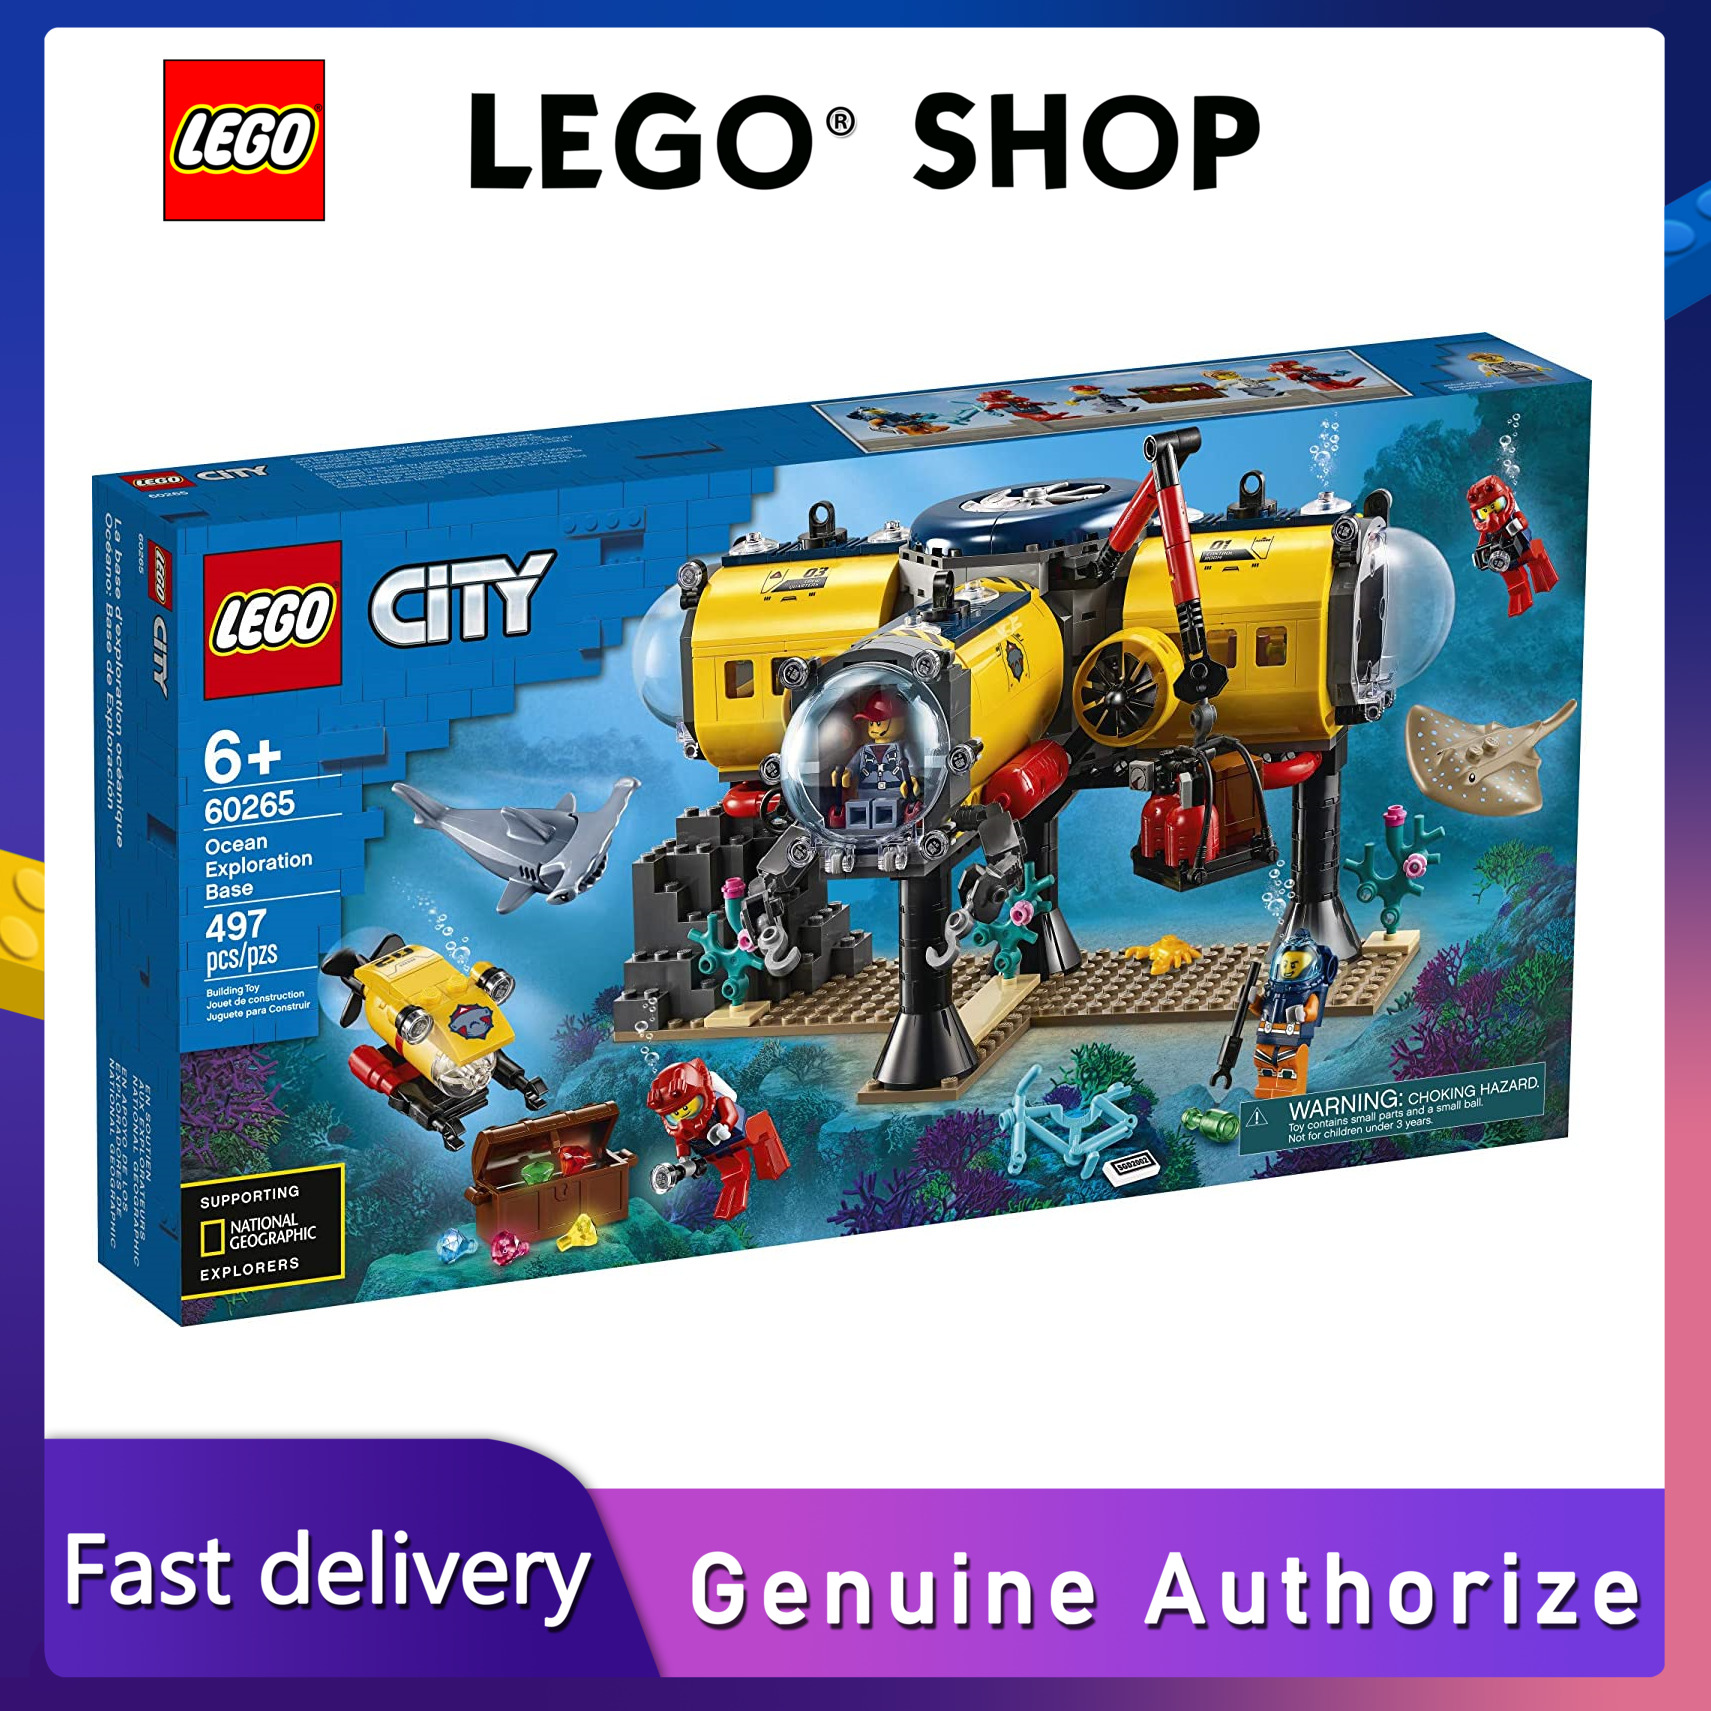 【Hàng chính hãng】 LEGO Bộ đồ chơi City Ocean Exploration Base 60265 với tàu ngầm, máy bay không người lái dưới nước, thợ lặn, thợ lặn, nhà khoa học và 2 nhân vật nhỏ thợ lặn, cũng như hình cá đuối và cá mập đầu búa (497 miếng) đảm bảo chính hãng